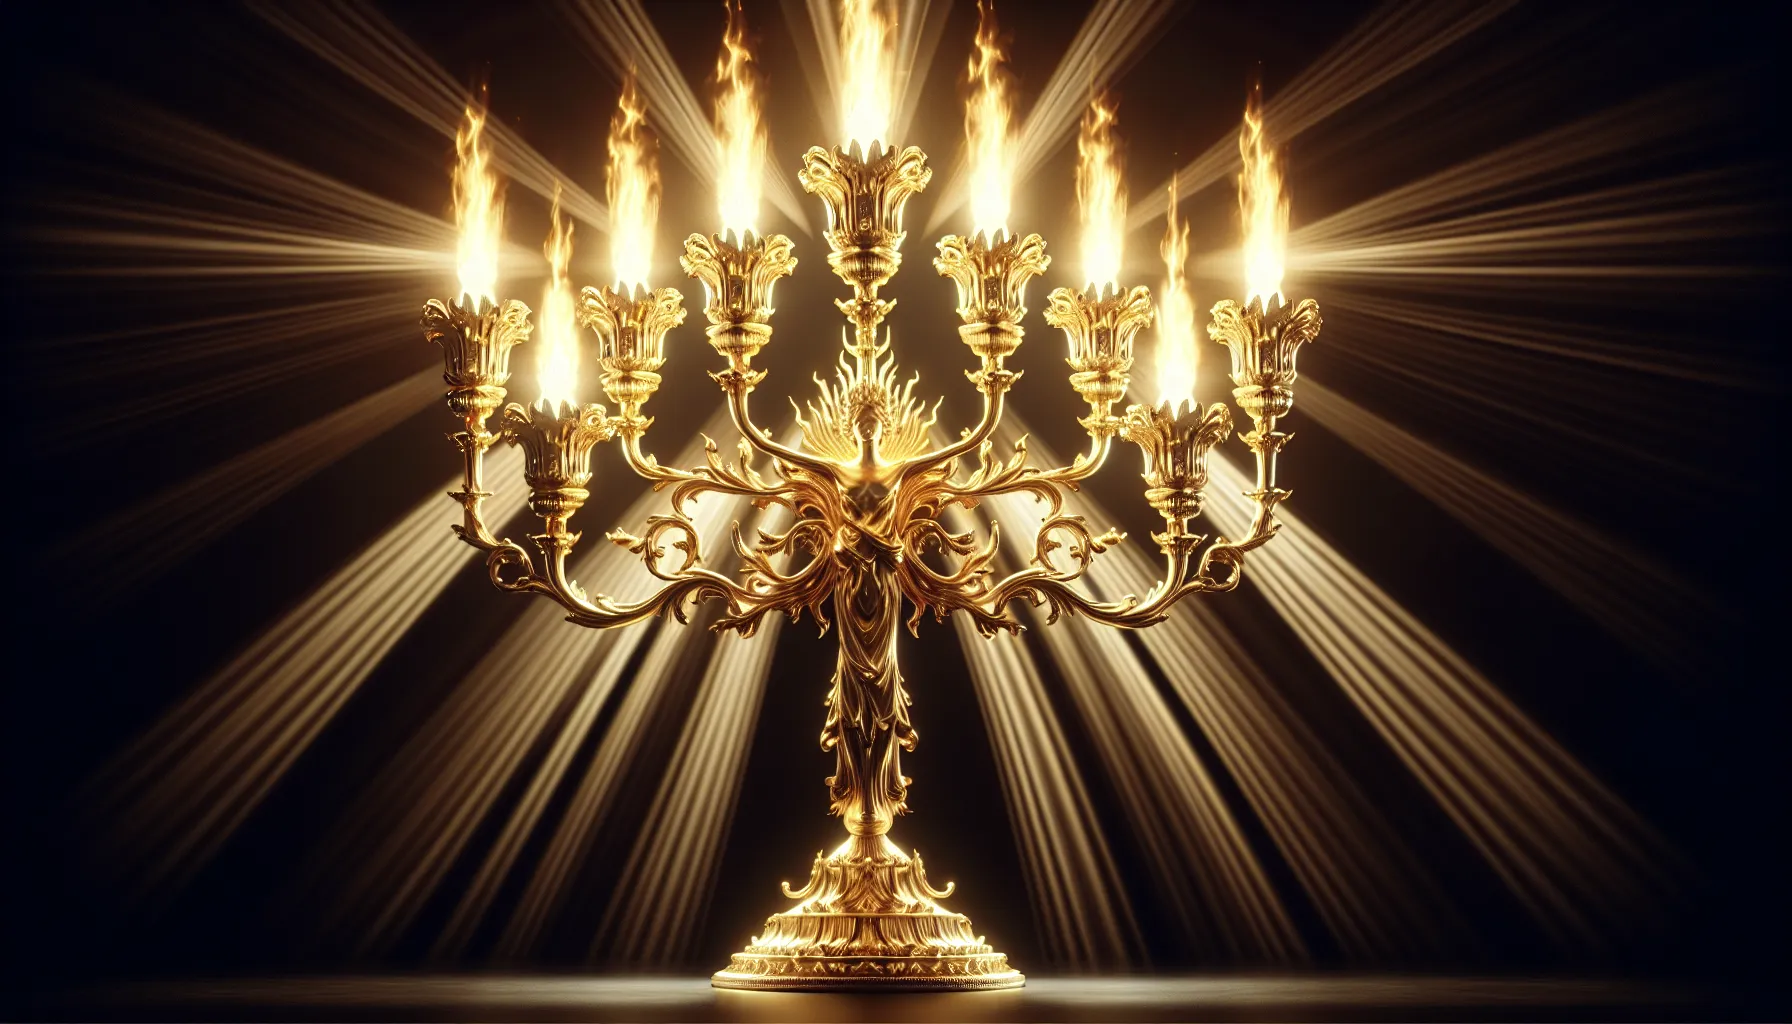 Los siete candelabros dorados iluminados simbolizando los 7 Espíritus de Dios